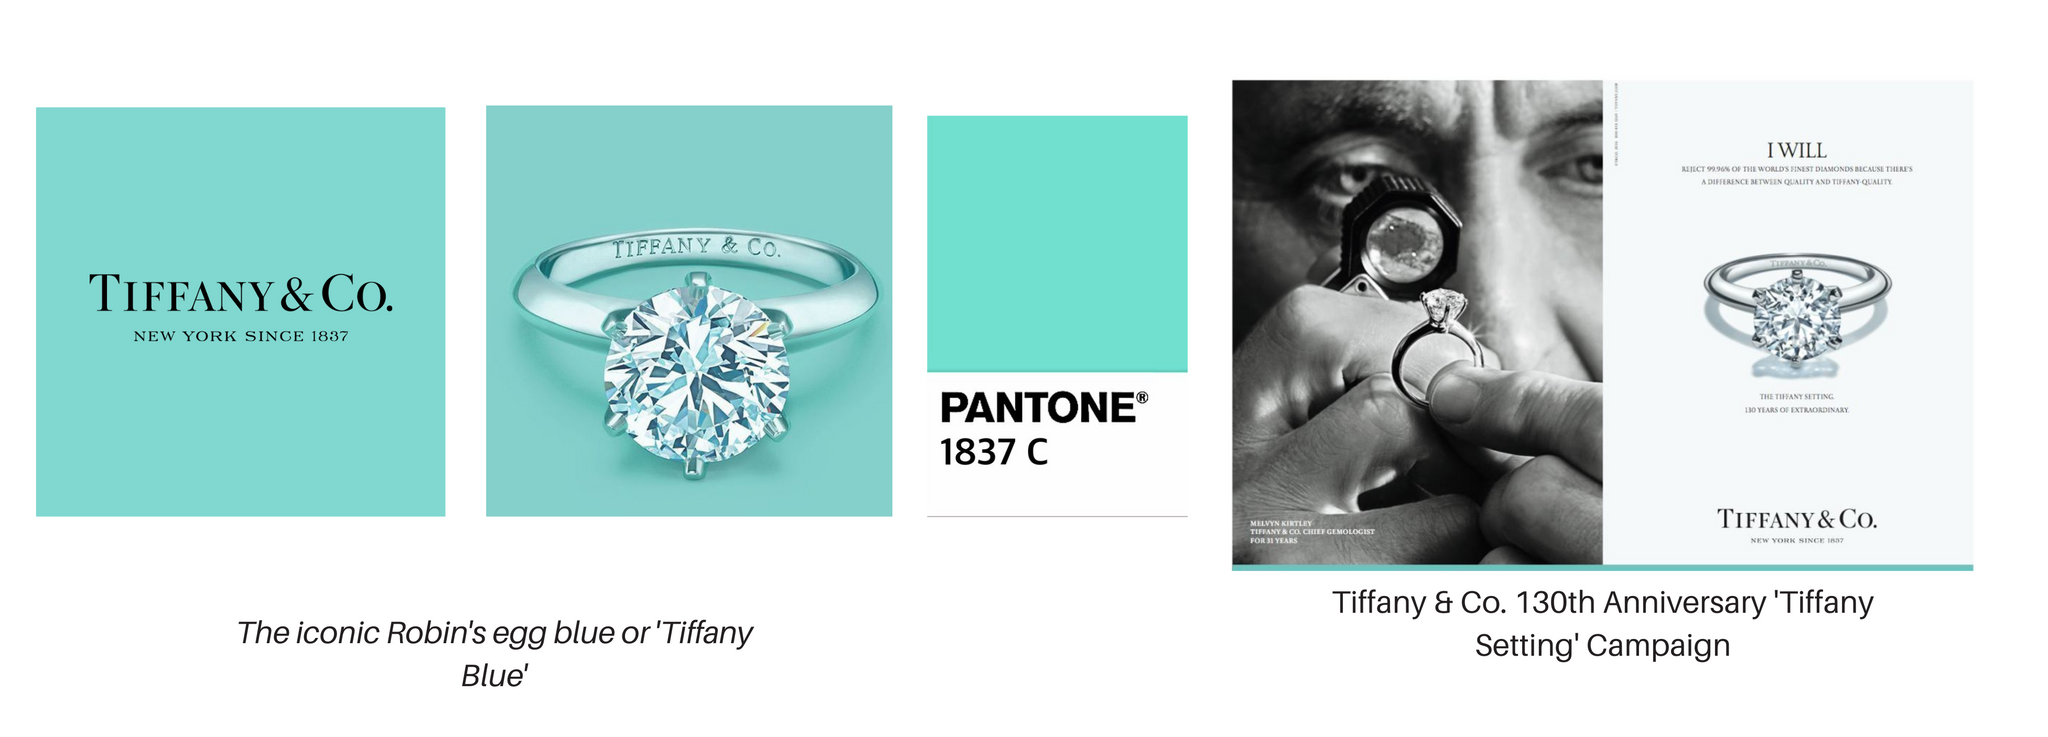 The World of Tiffany